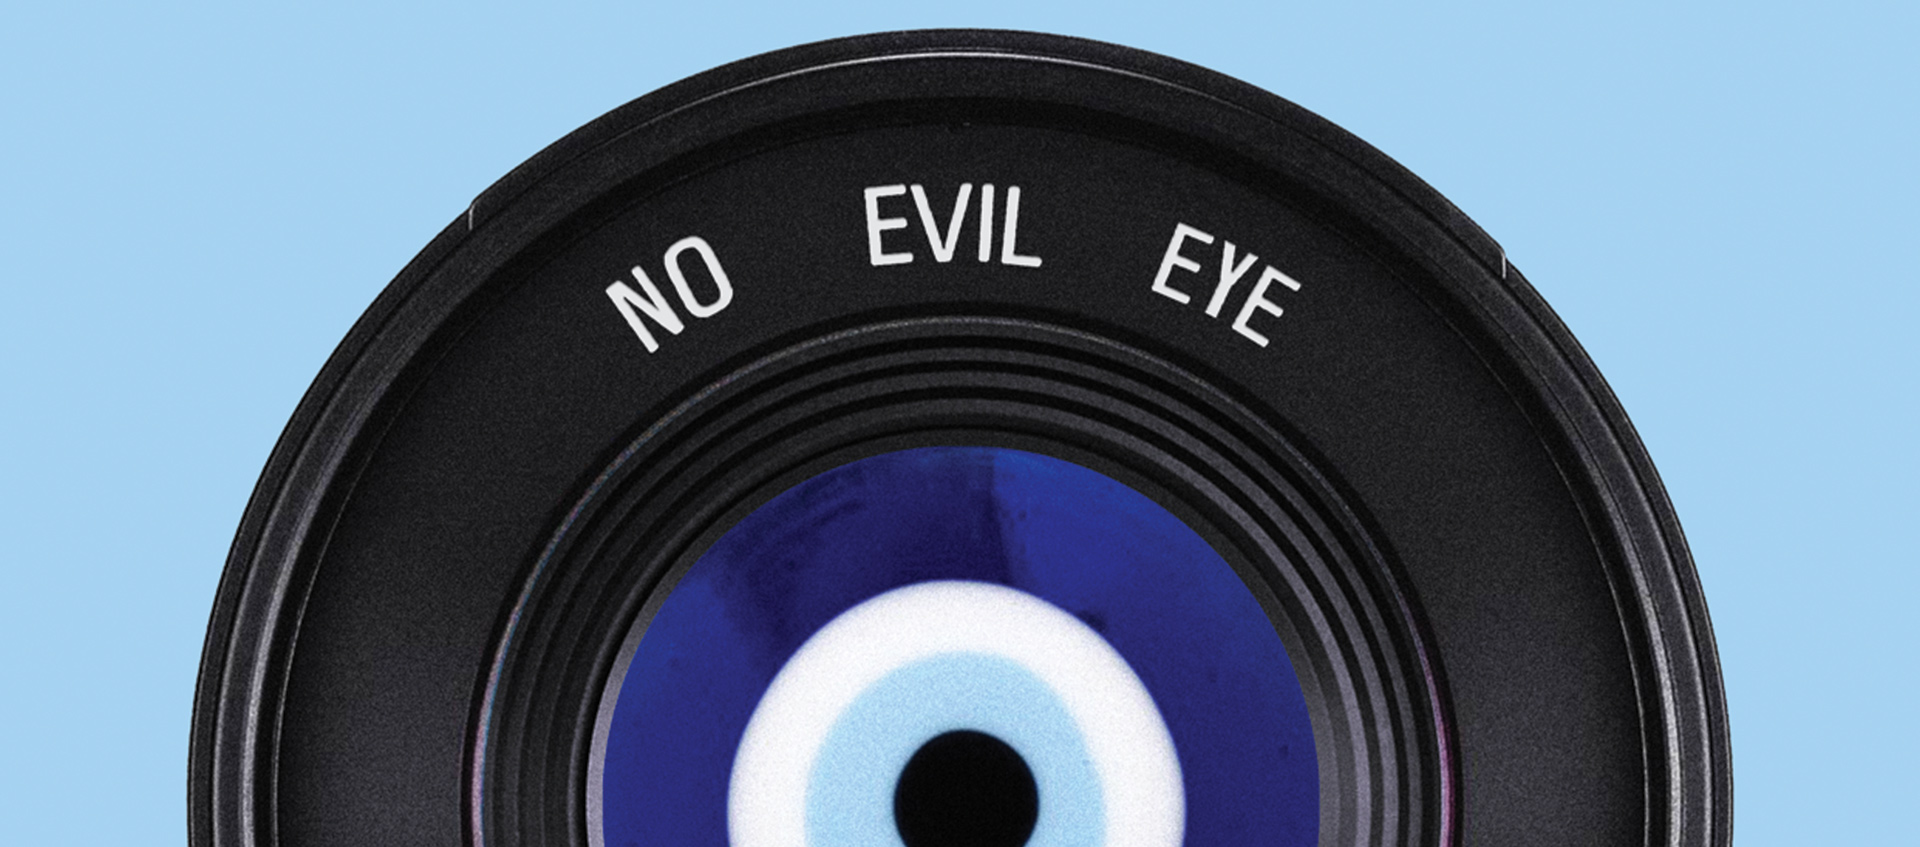 No Evil Eye